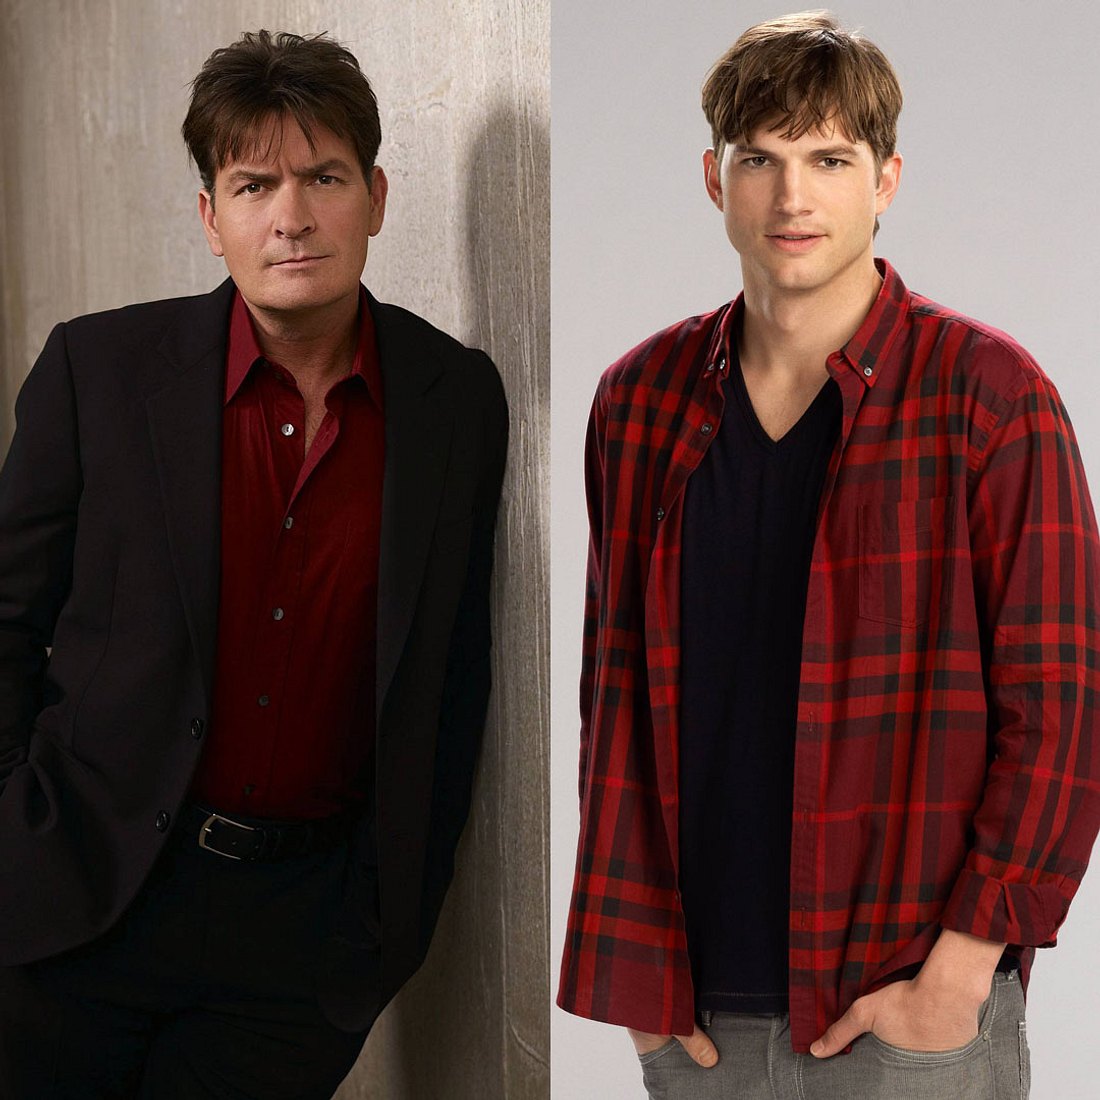 Schauspieler-Wechsel: Charlie Sheen bei „Two And A Half Men“ gefeuert und durch Ashton Kutcher ersetzt